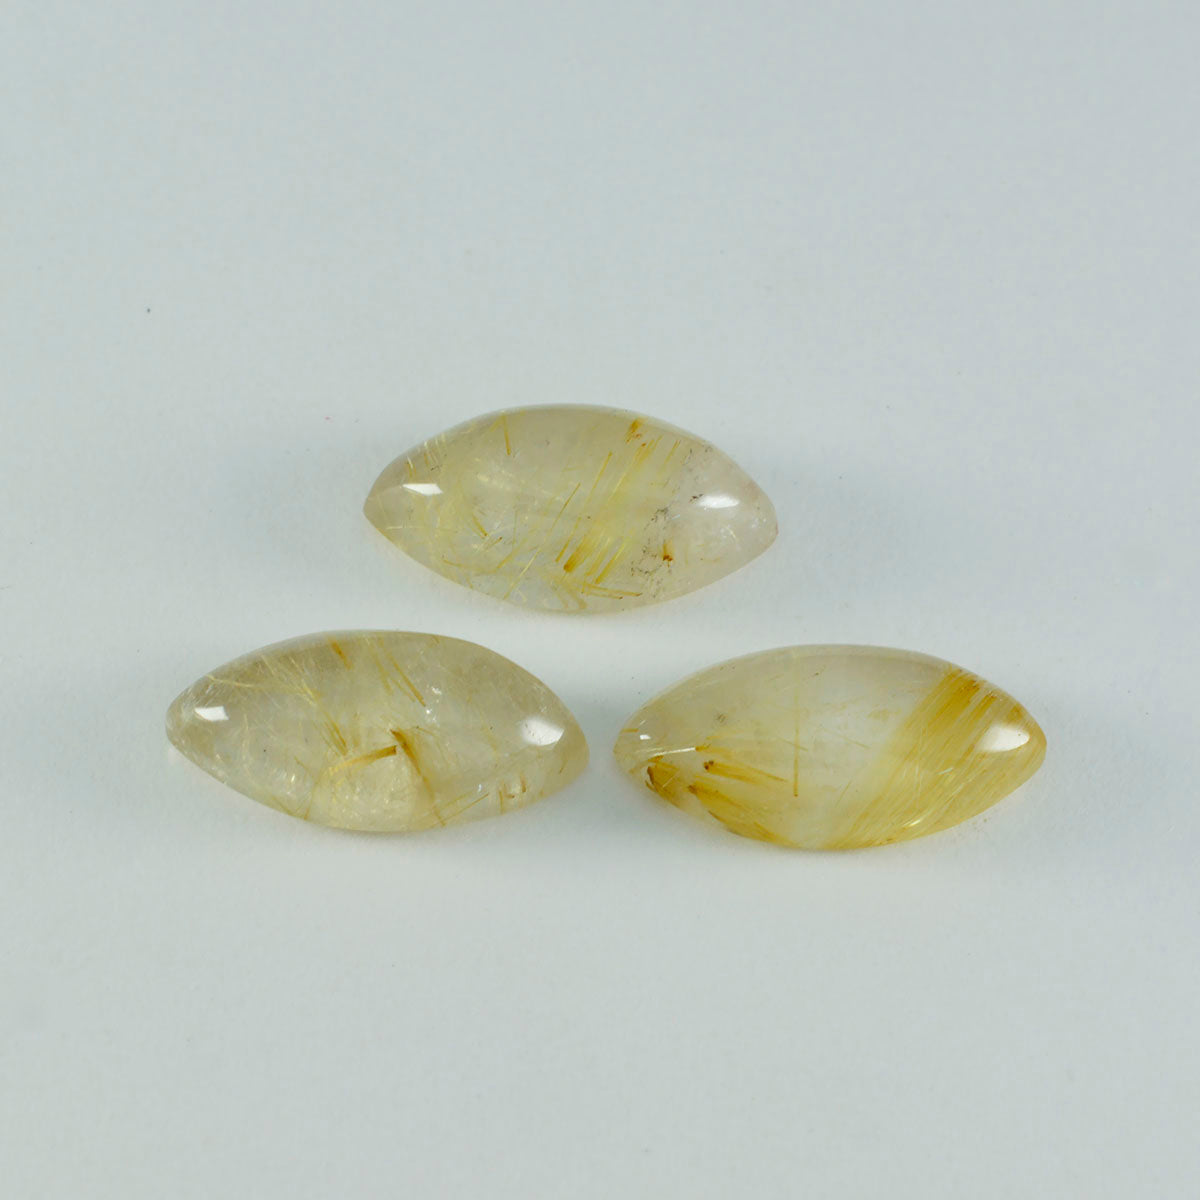 Riyogems – cabochon de quartz multi-rutile, 11x22mm, forme marquise, belle qualité, gemme en vrac, 1 pièce